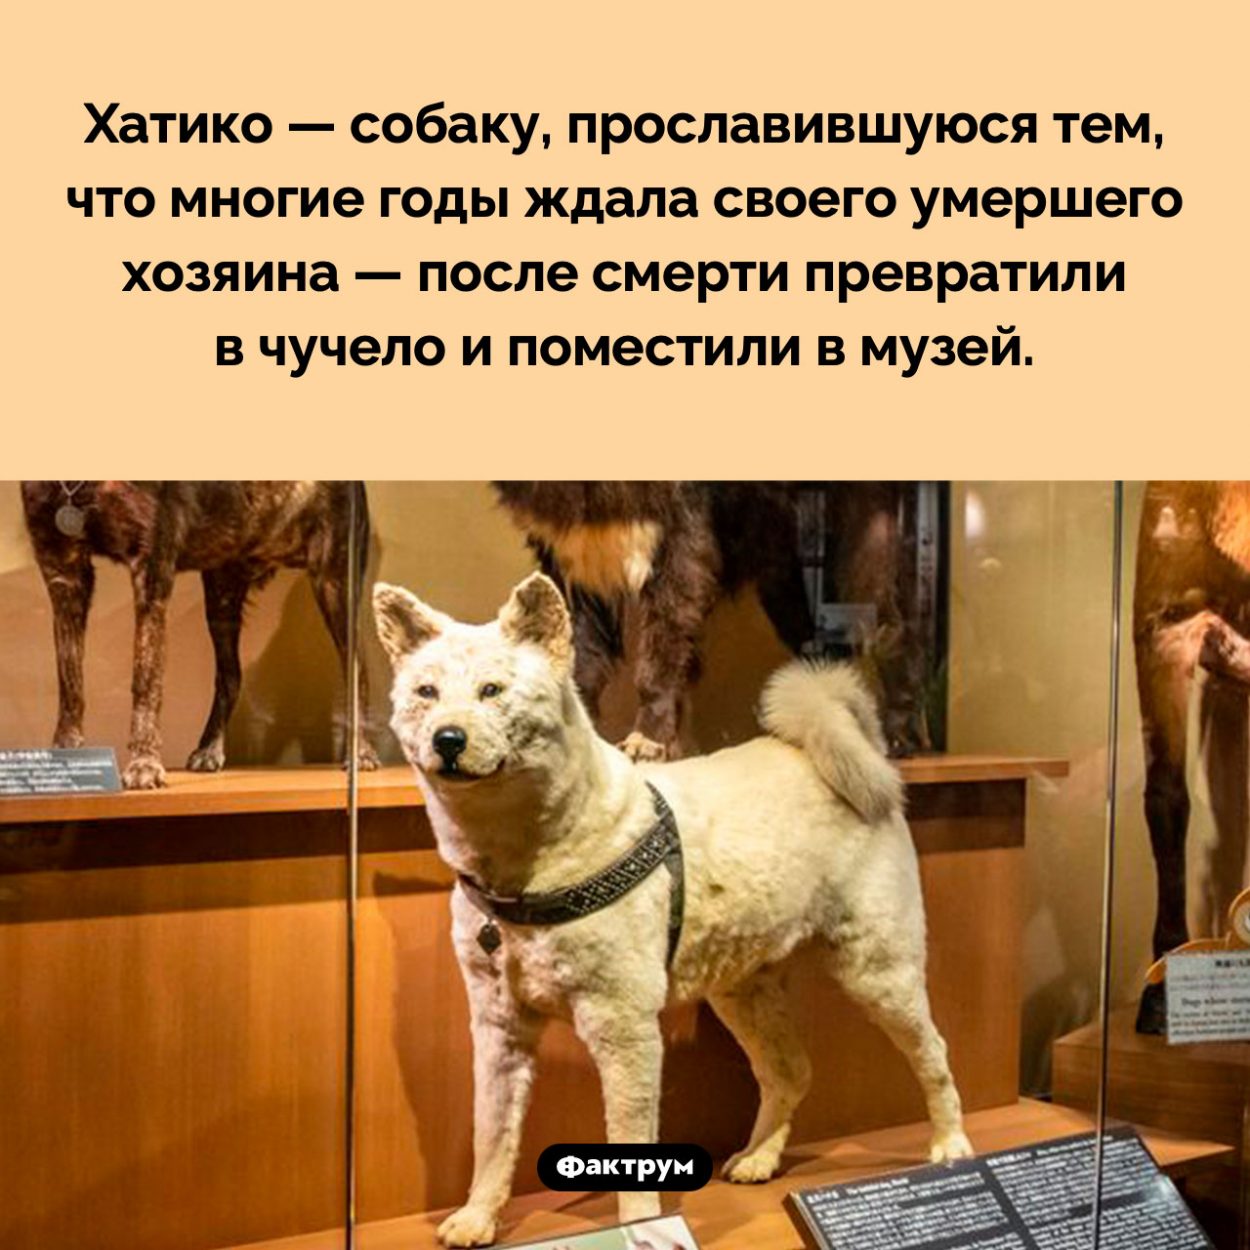 Чучело Хатико. Хатико — собаку, прославившуюся тем, что многие годы ждала своего умершего хозяина — после смерти превратили в чучело и поместили в музей.